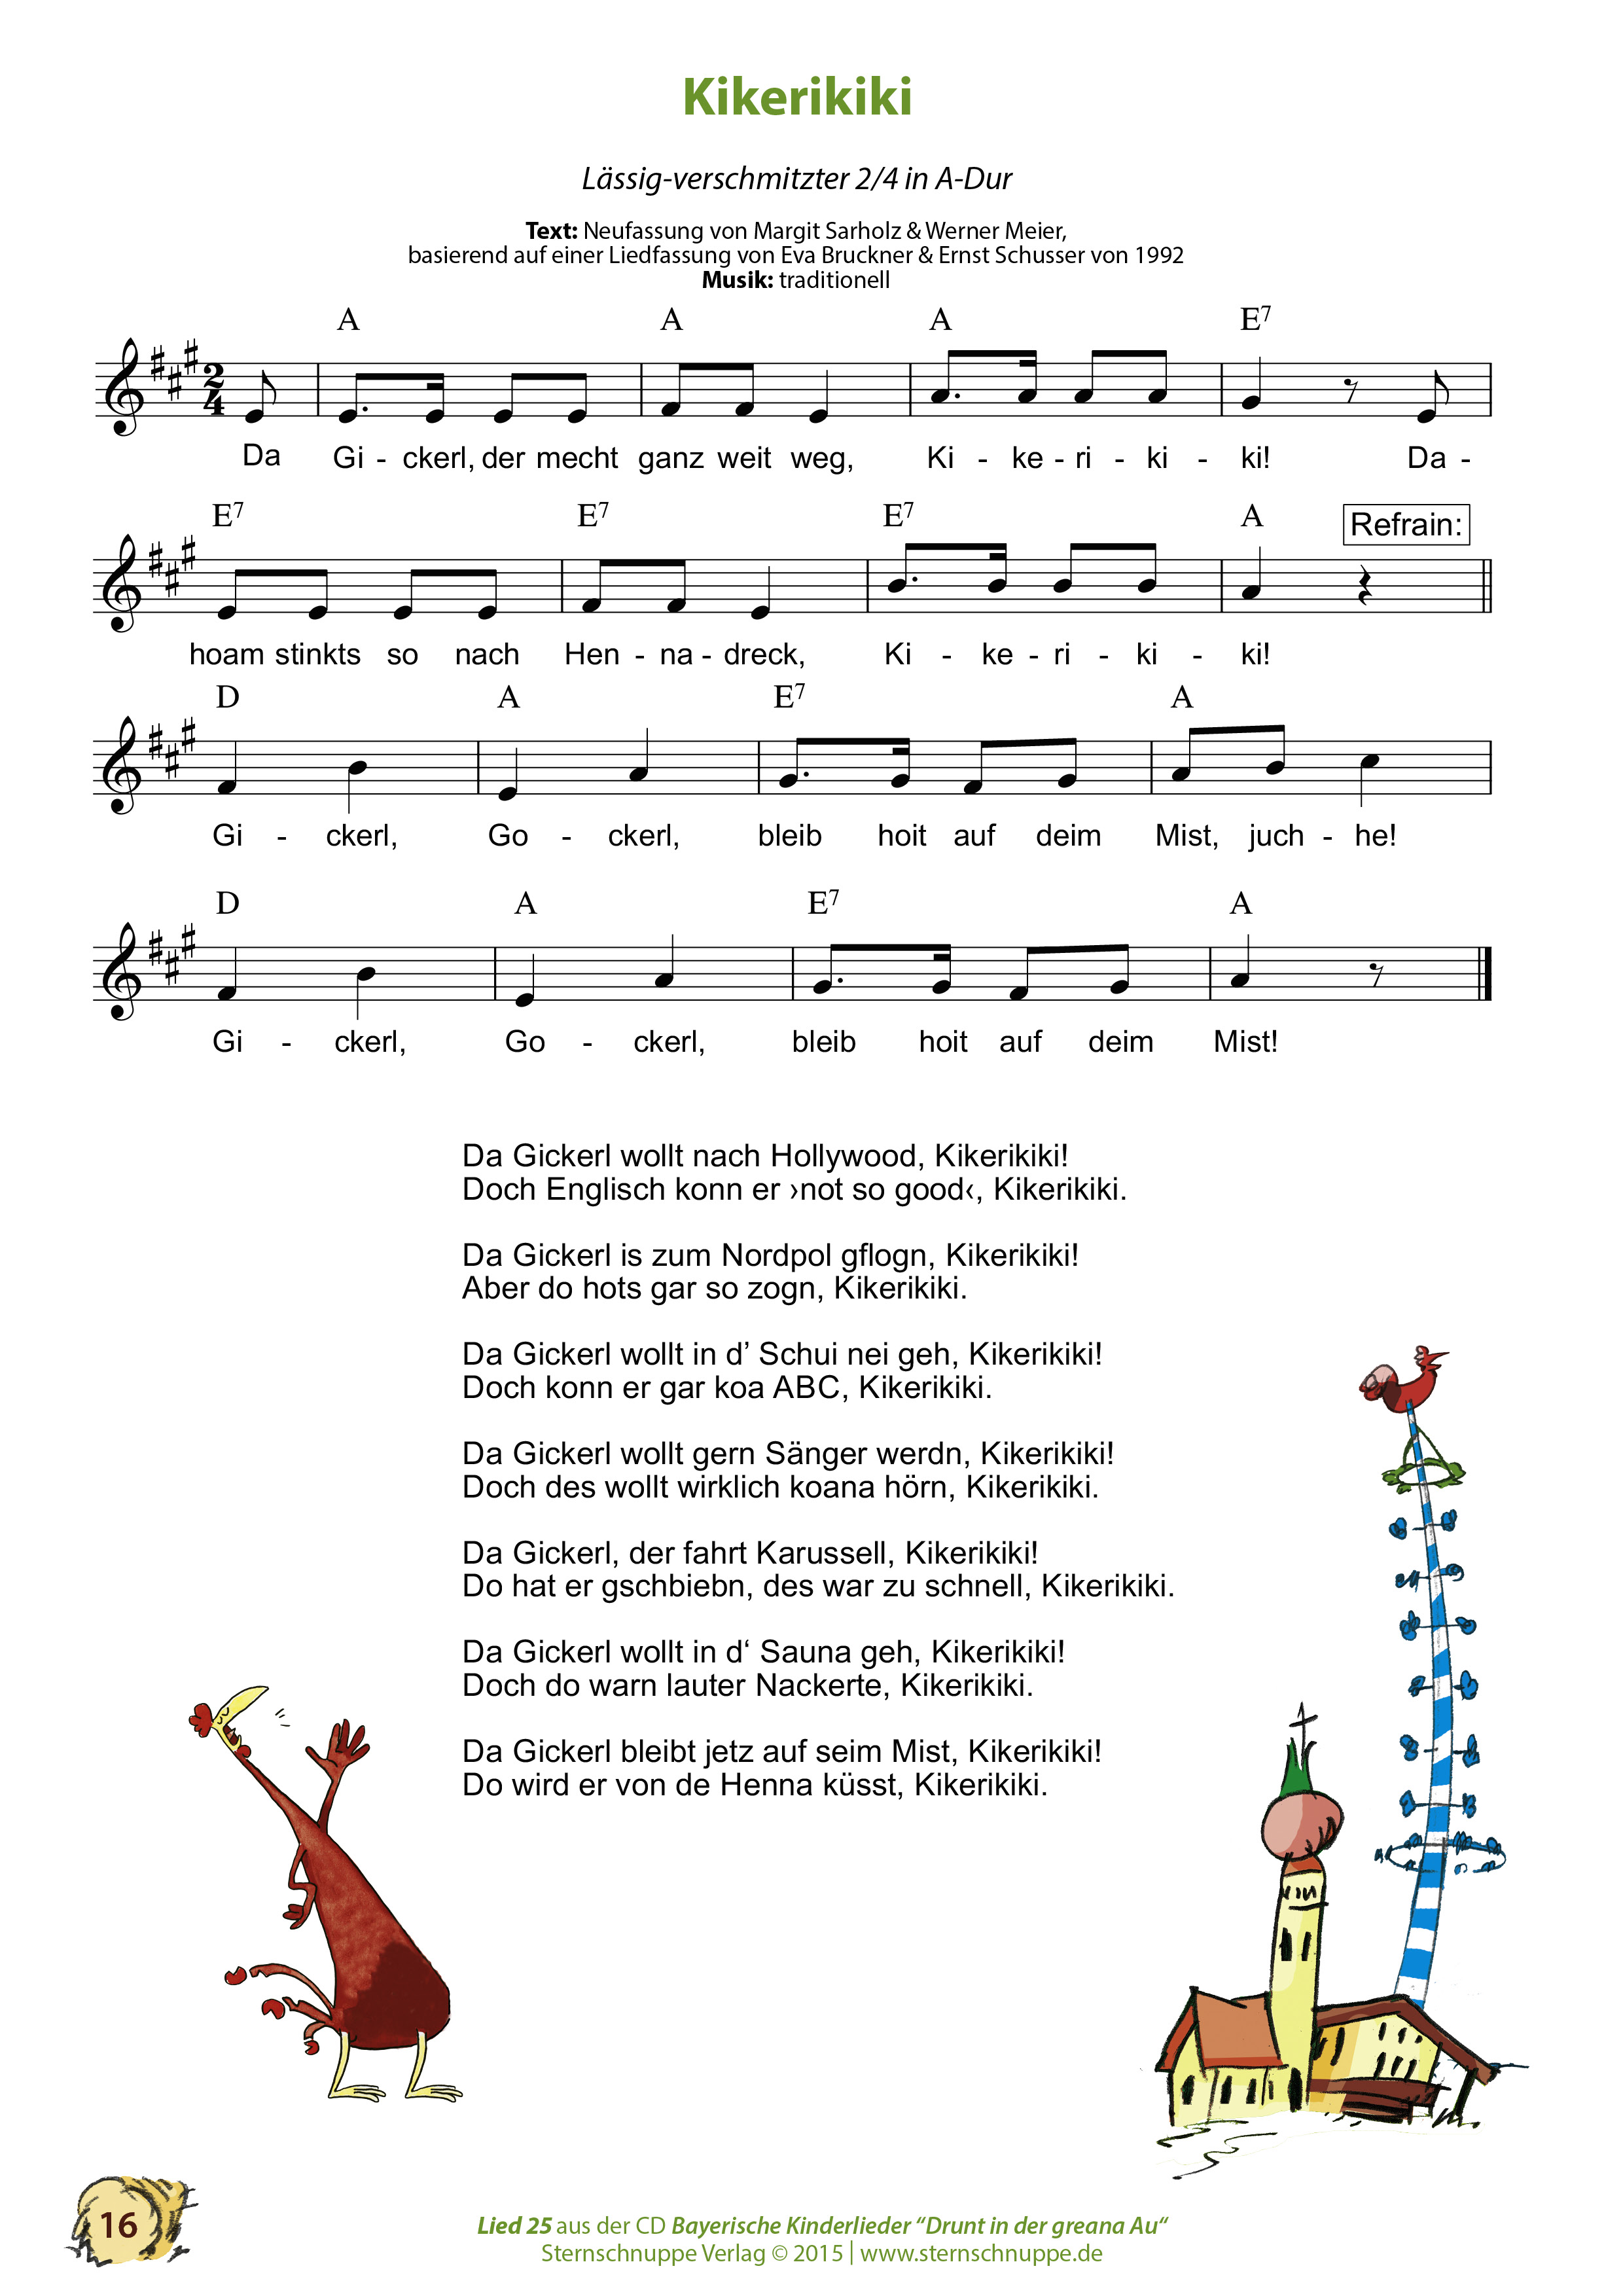 Liedtext, Akkorde und Noten vom Kinderlied Kikerikiki